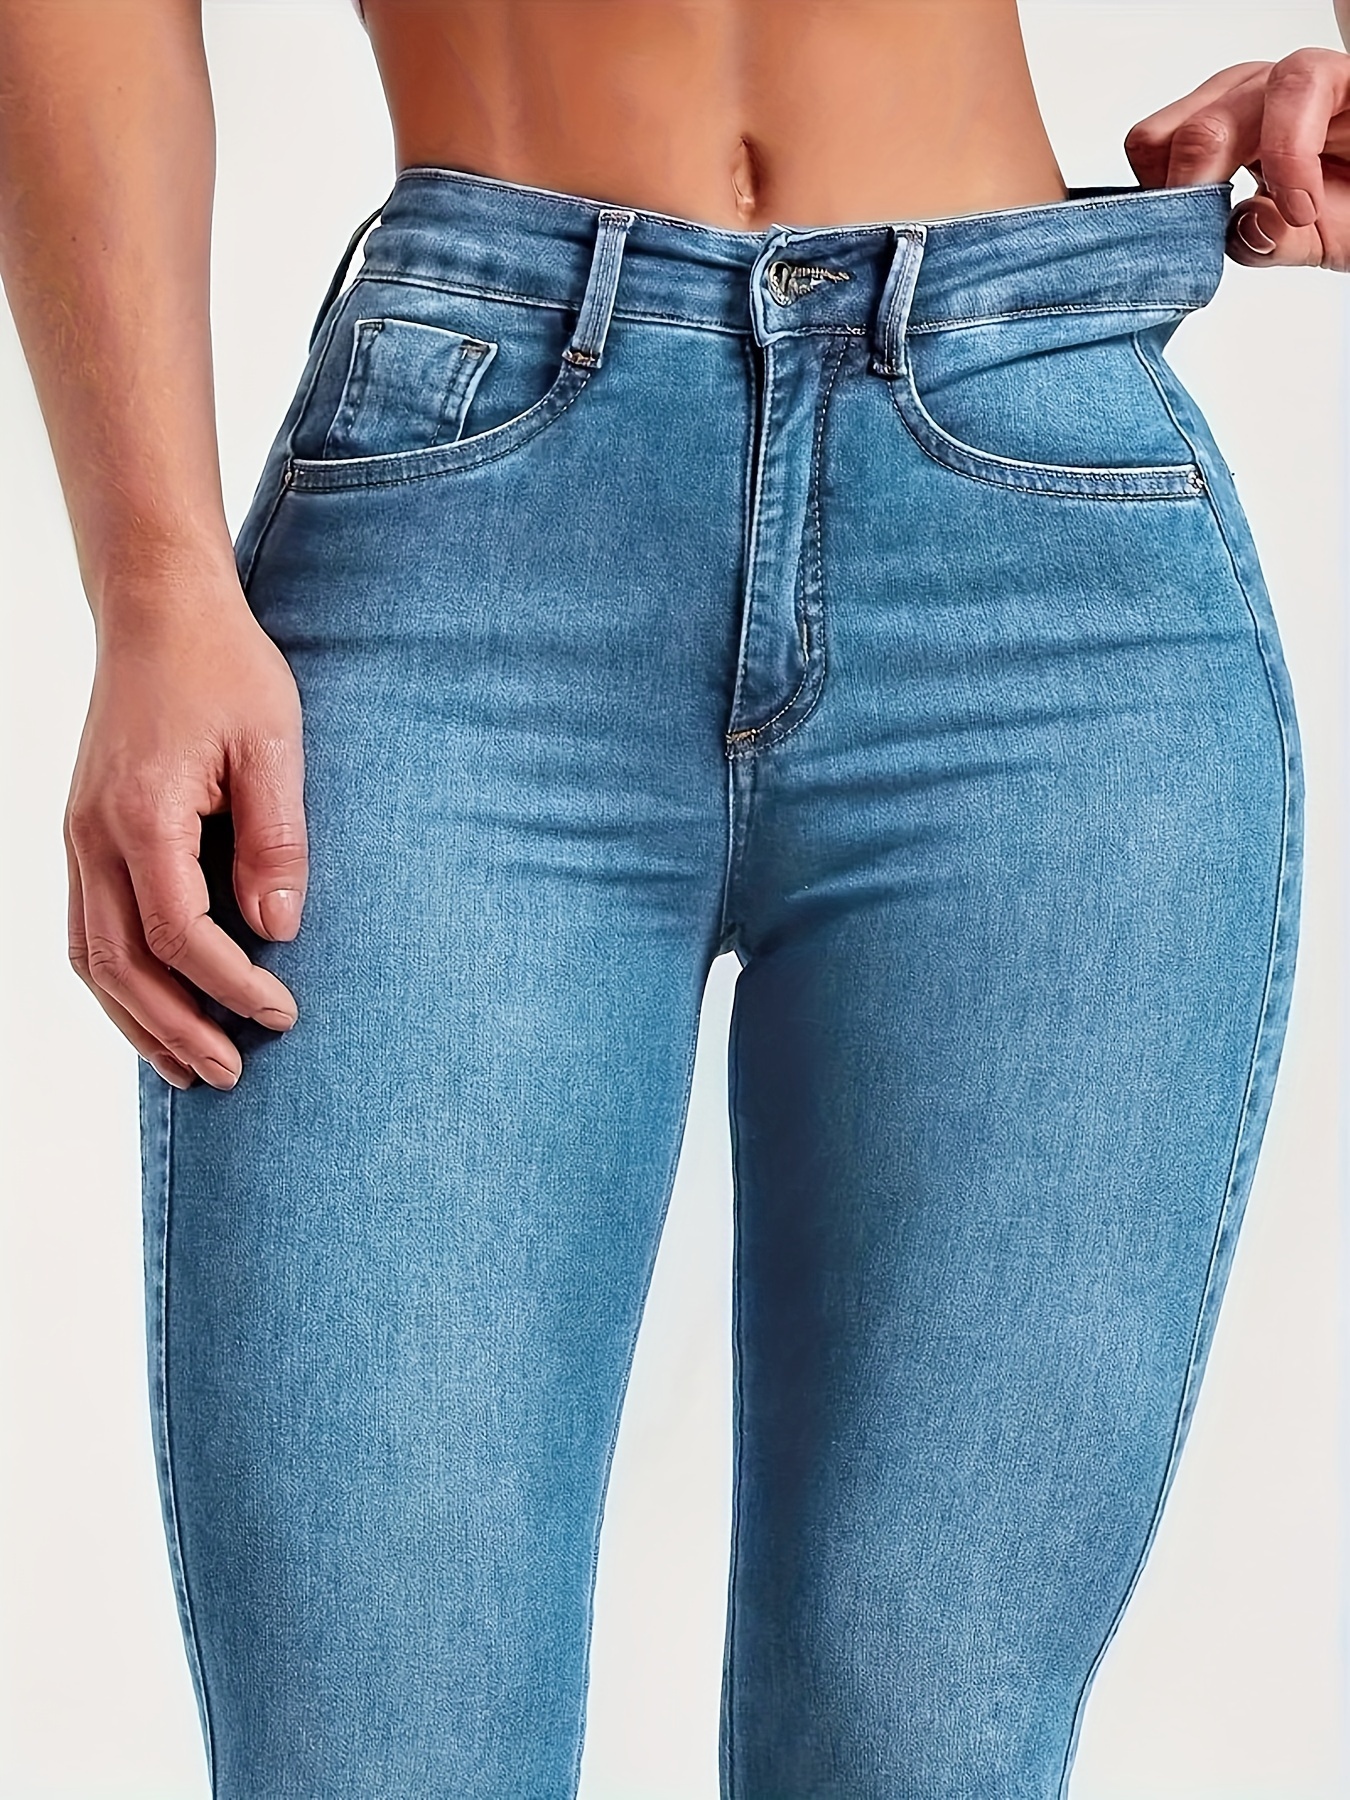 Women's Butt Lift Stretch Denim Jeans 